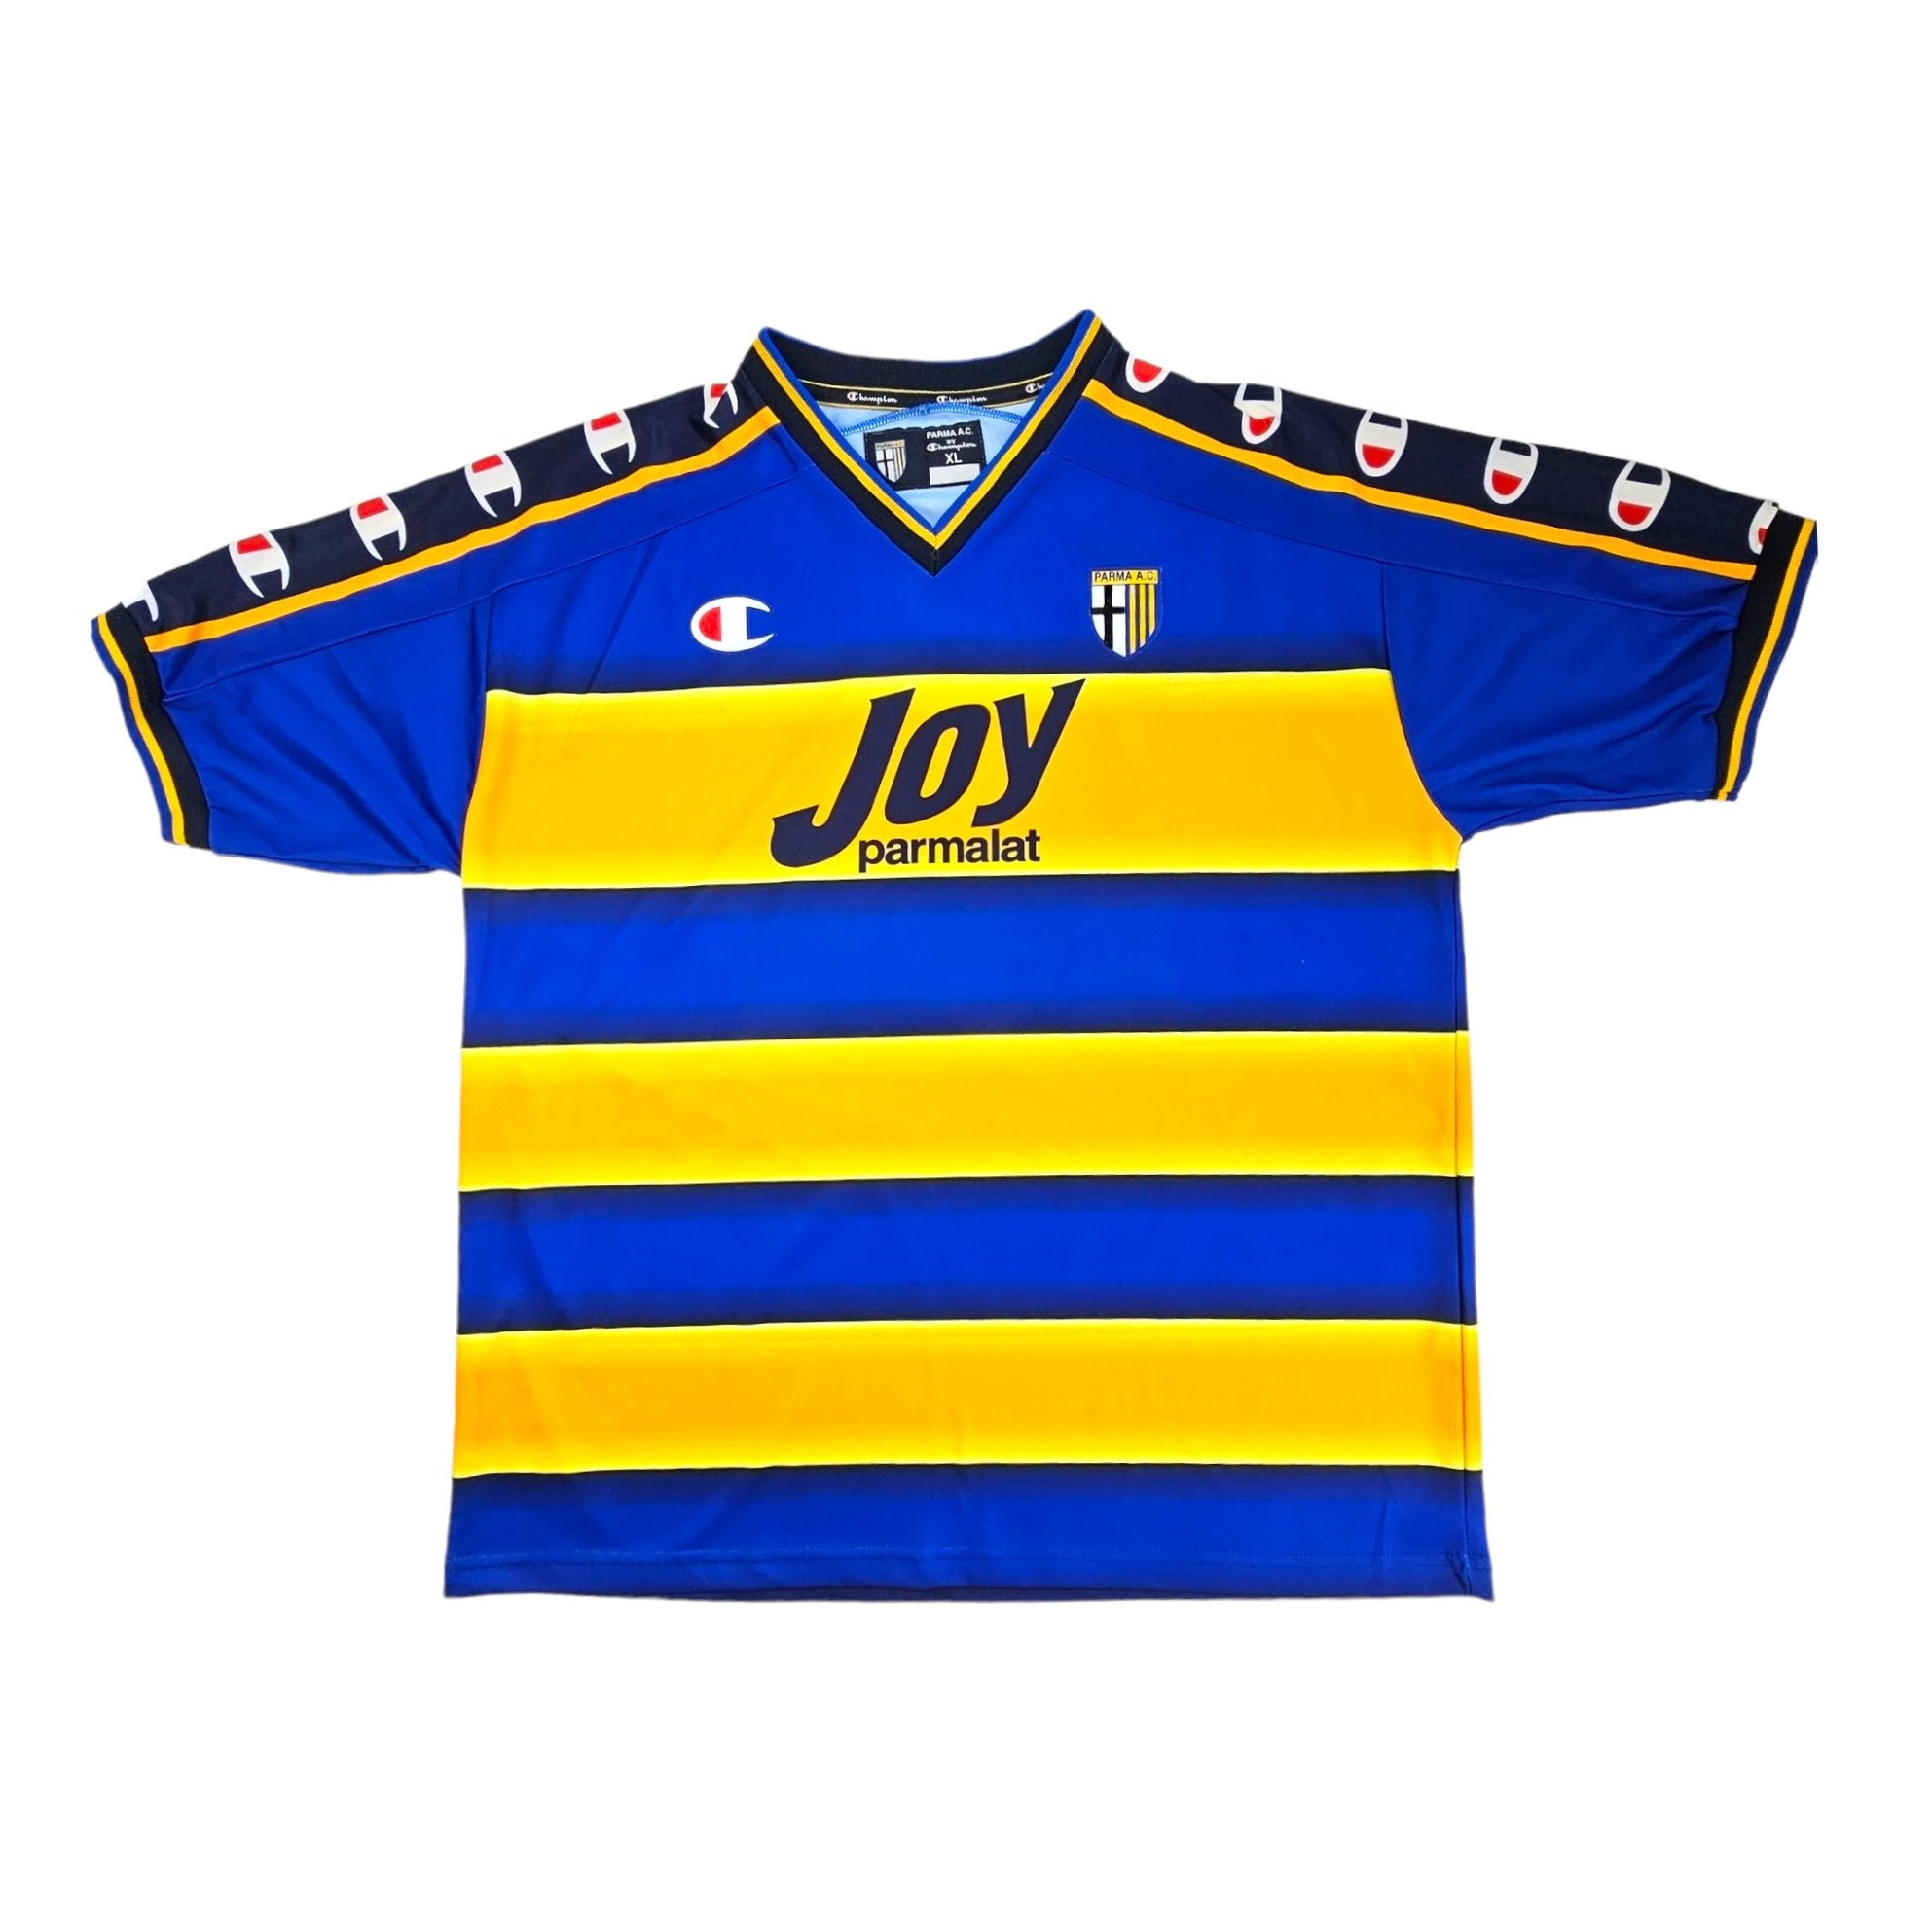 2001/02 Parma Home Football Shirt (XL) Champion #10 Nakata 